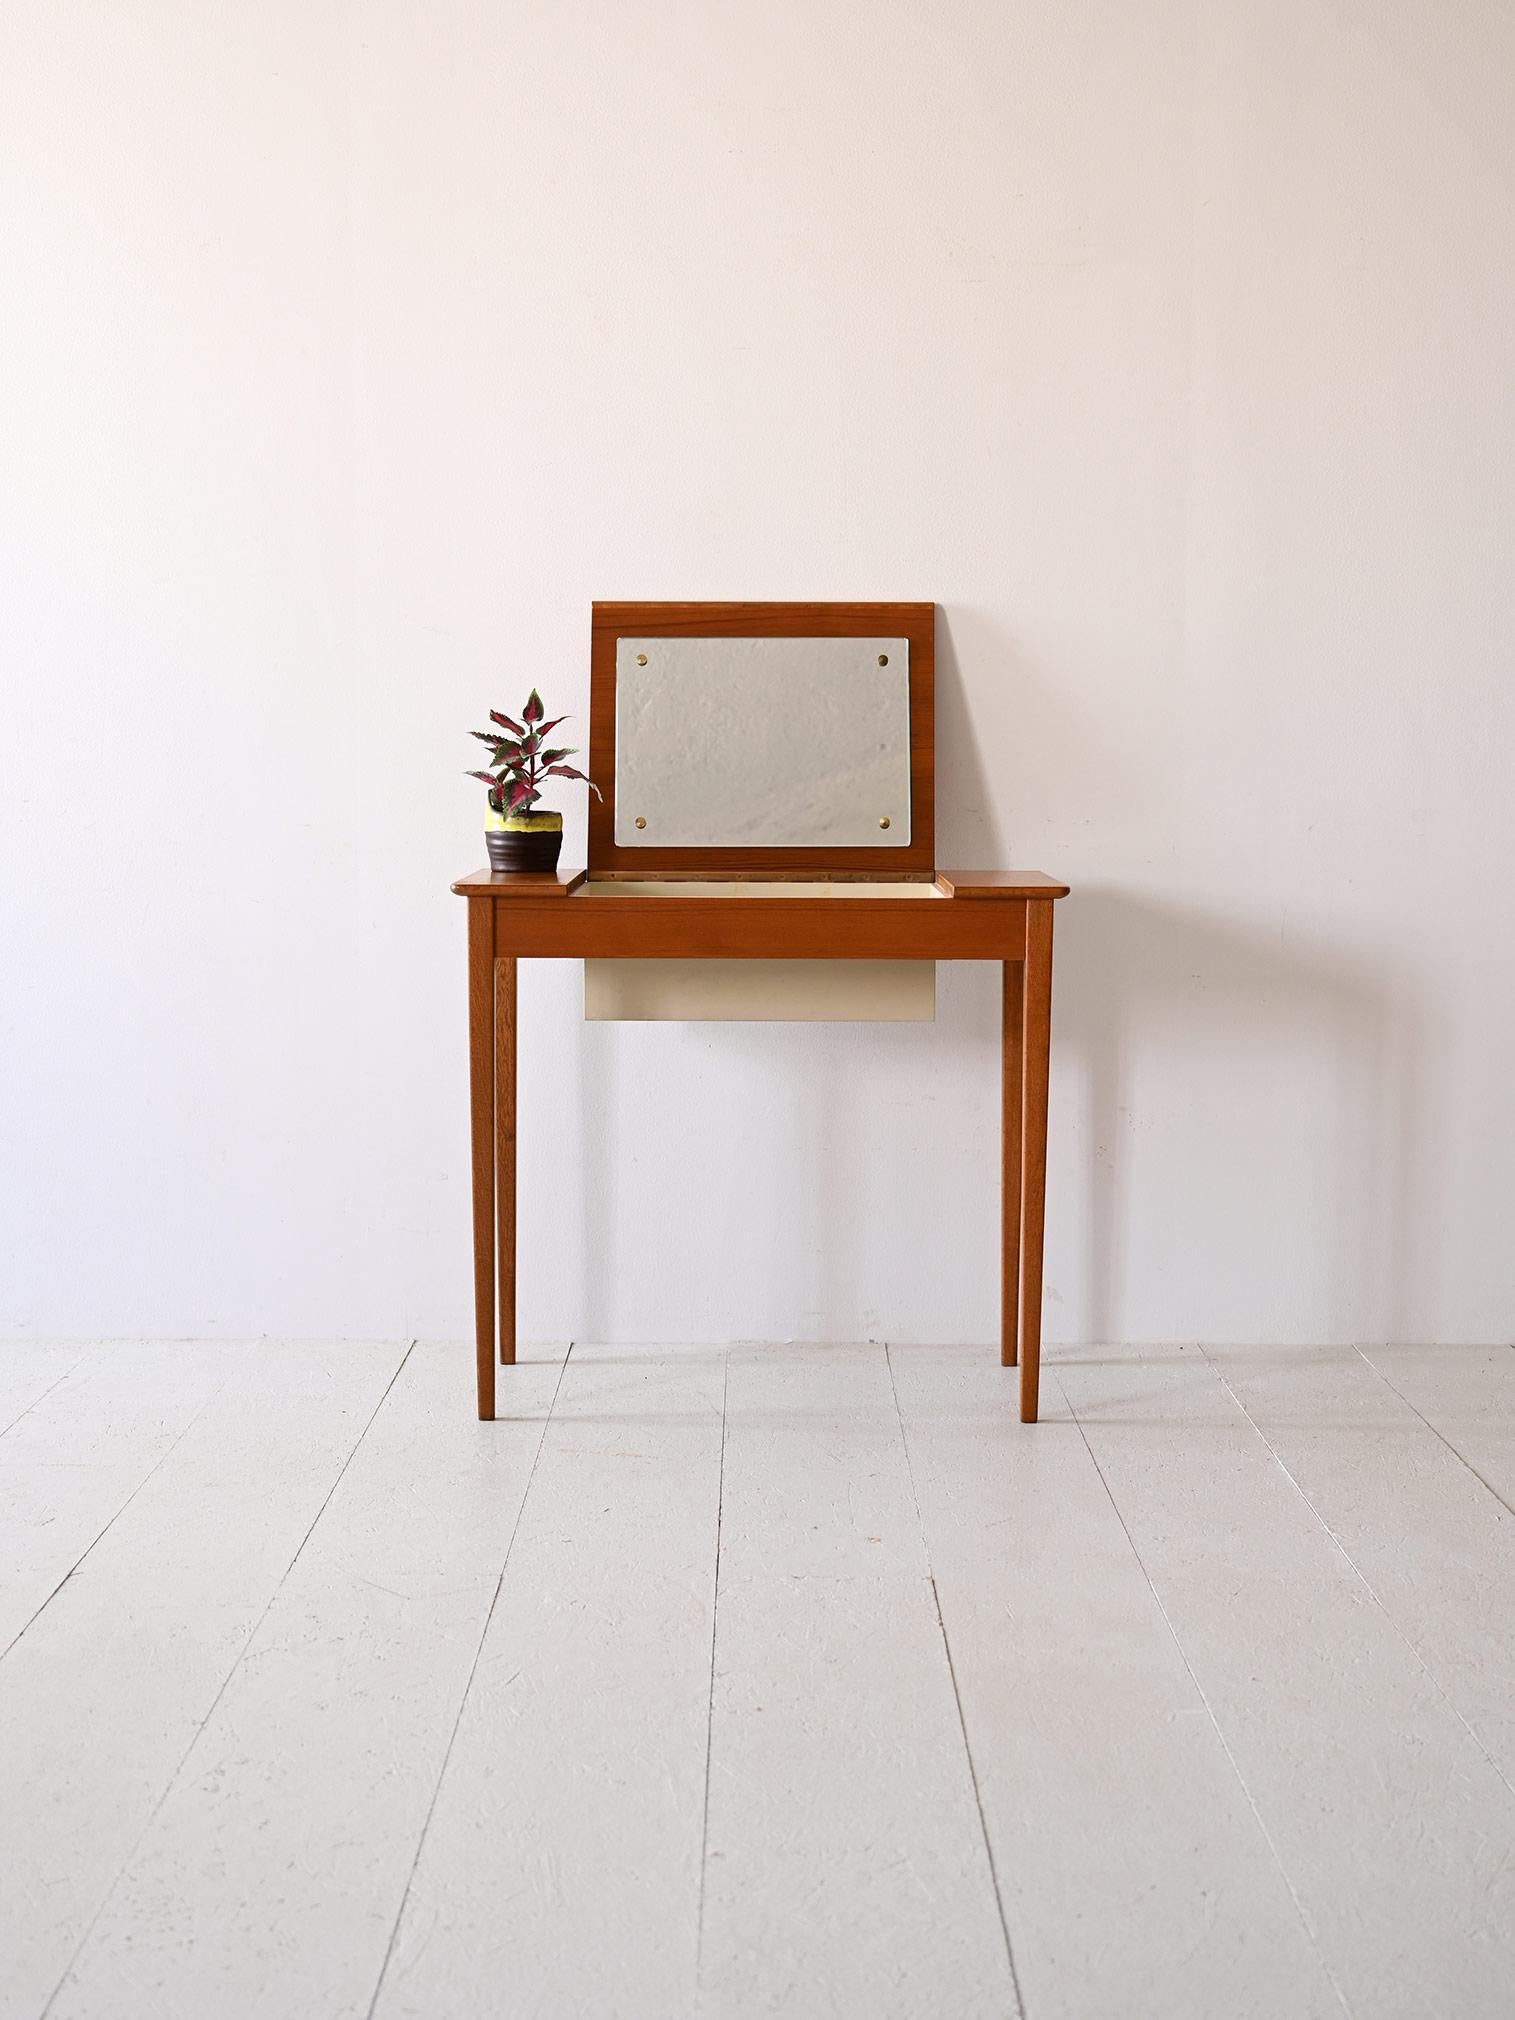 Nordischer Frisiertisch/Schreibtisch aus den 1960er Jahren mit klappbarer Platte.

Skandinavische Teakholzmöbel, die Ästhetik und Funktionalität vereinen.
Dieser kleine Schminktisch zeichnet sich durch seine klappbare Platte aus, die auf der